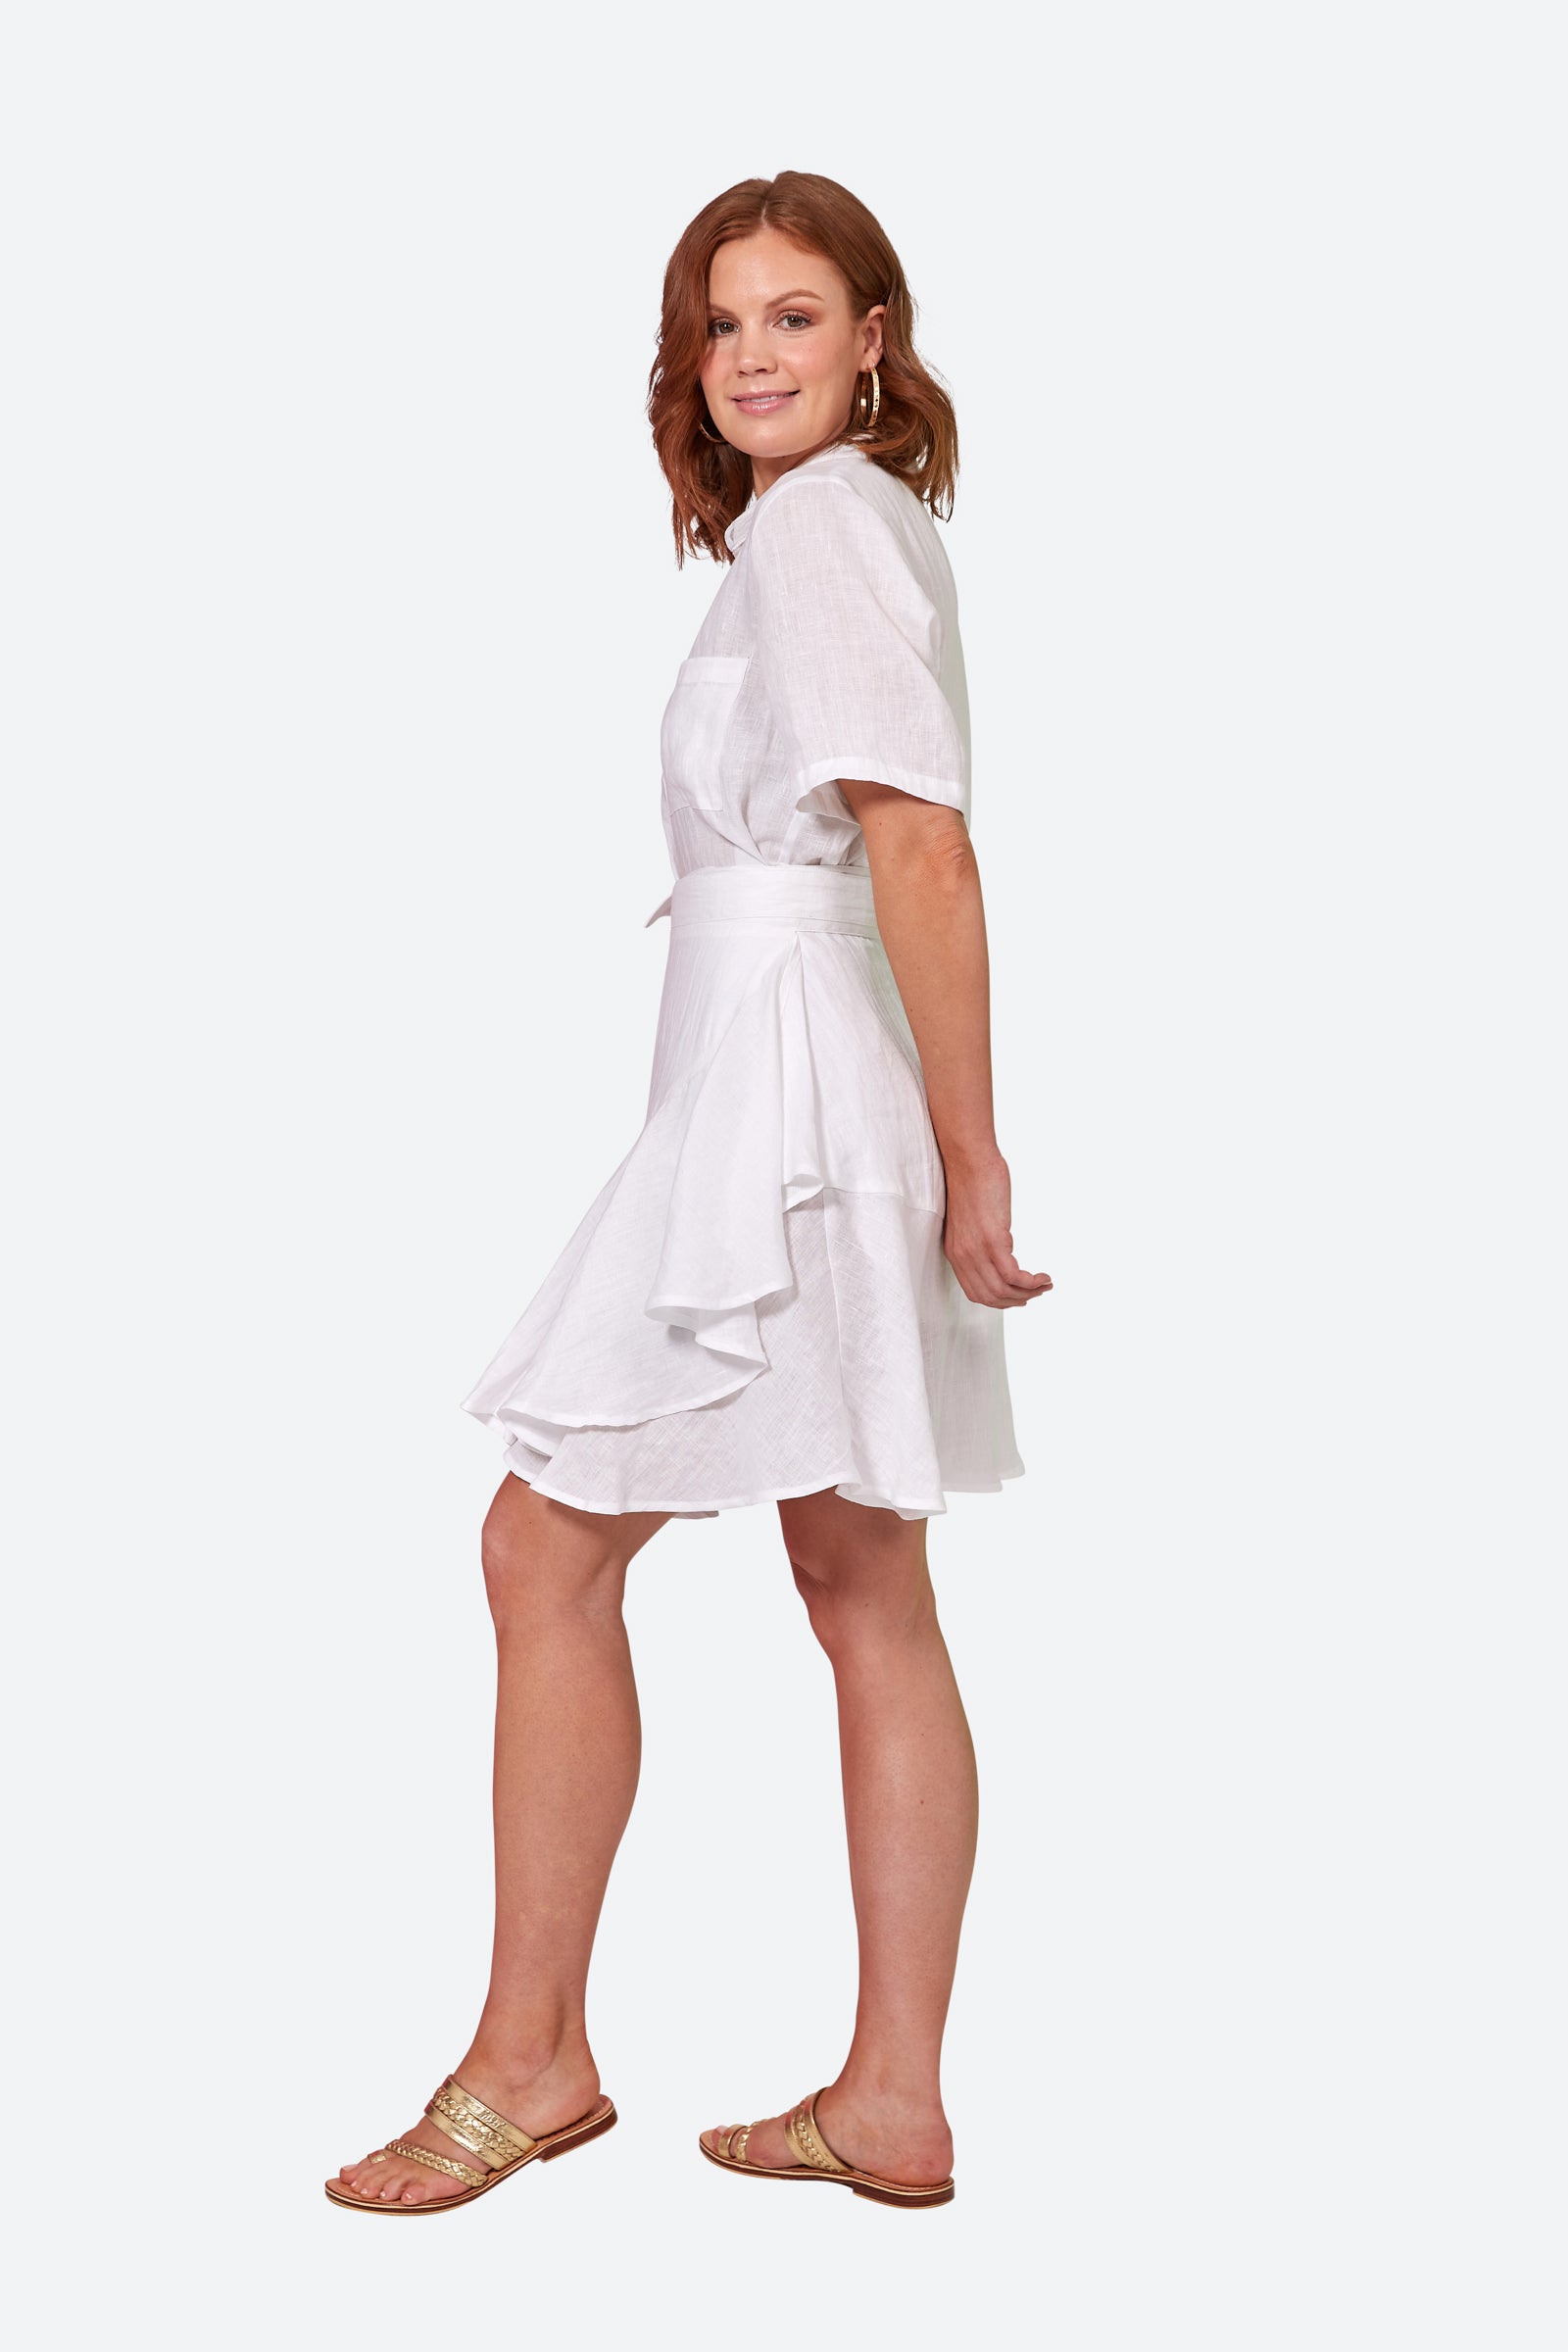 La Vie Mini Wrap Skirt - Blanc - eb&ive Clothing - Skirt Mini Linen